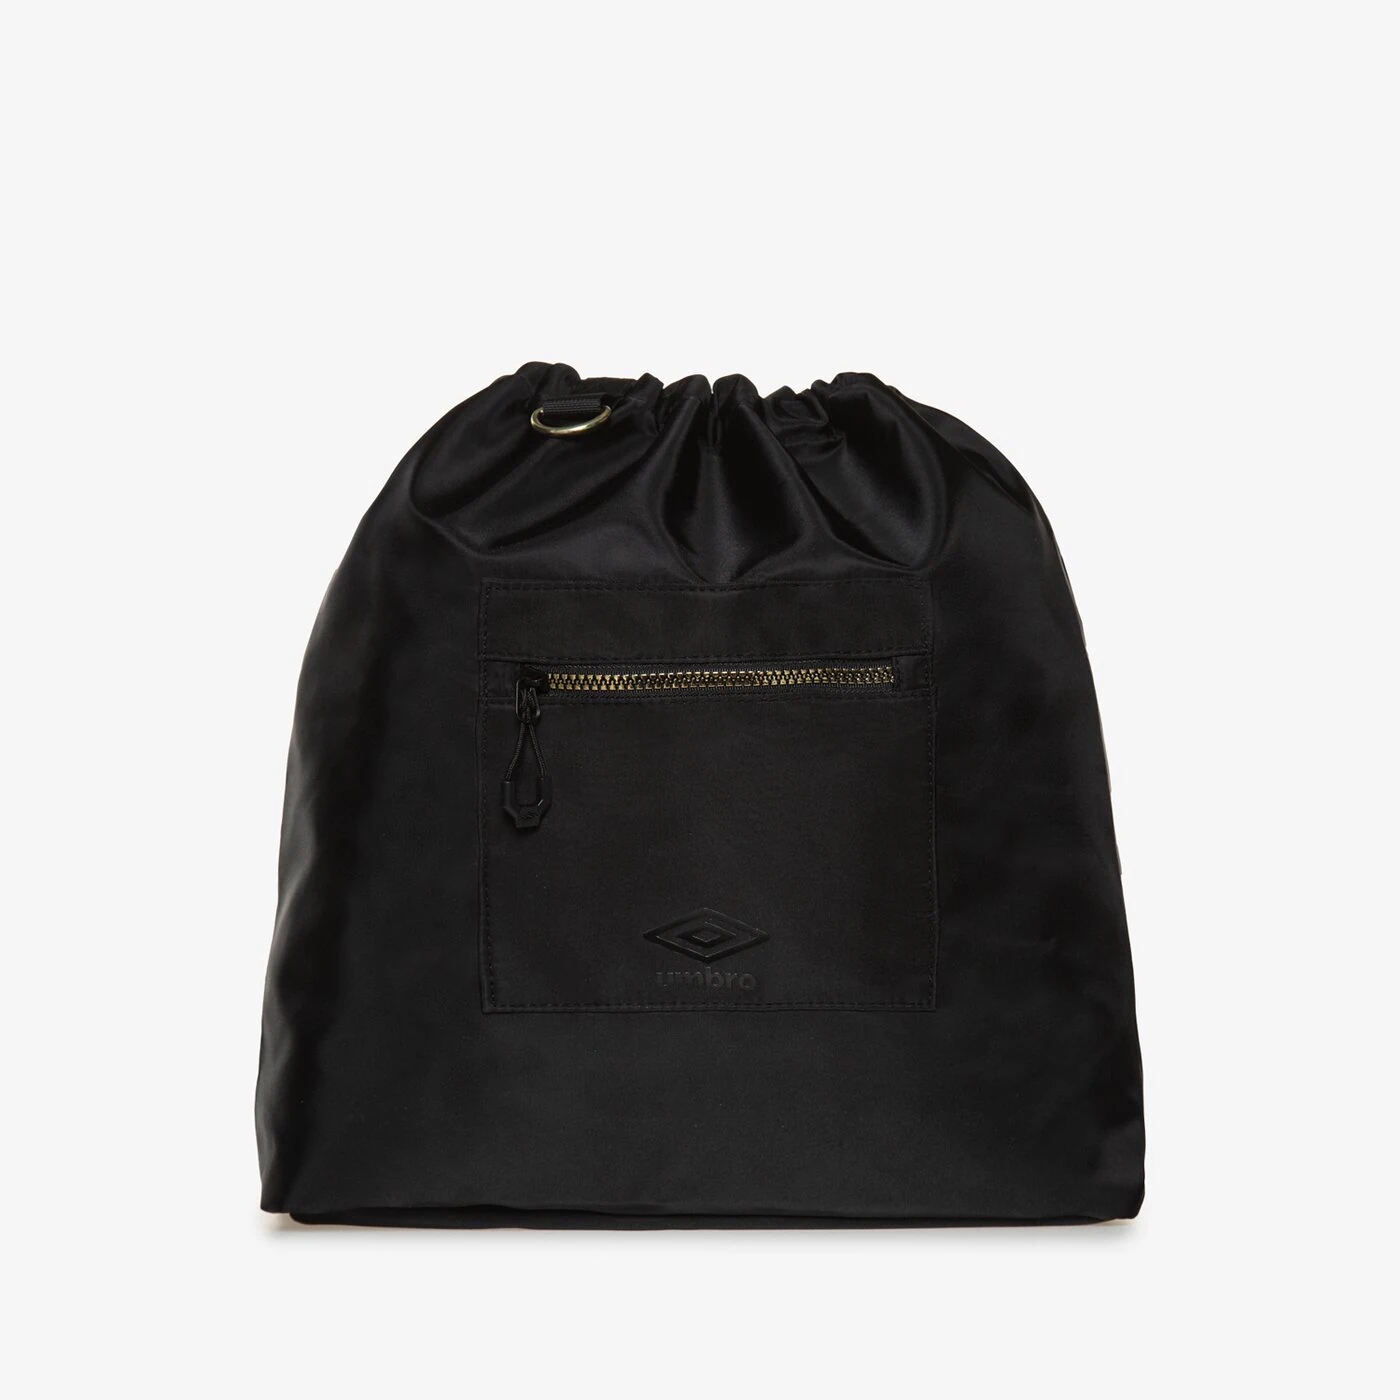 Сумка Umbro Stirling, черный сумка umbro kelbrock черный